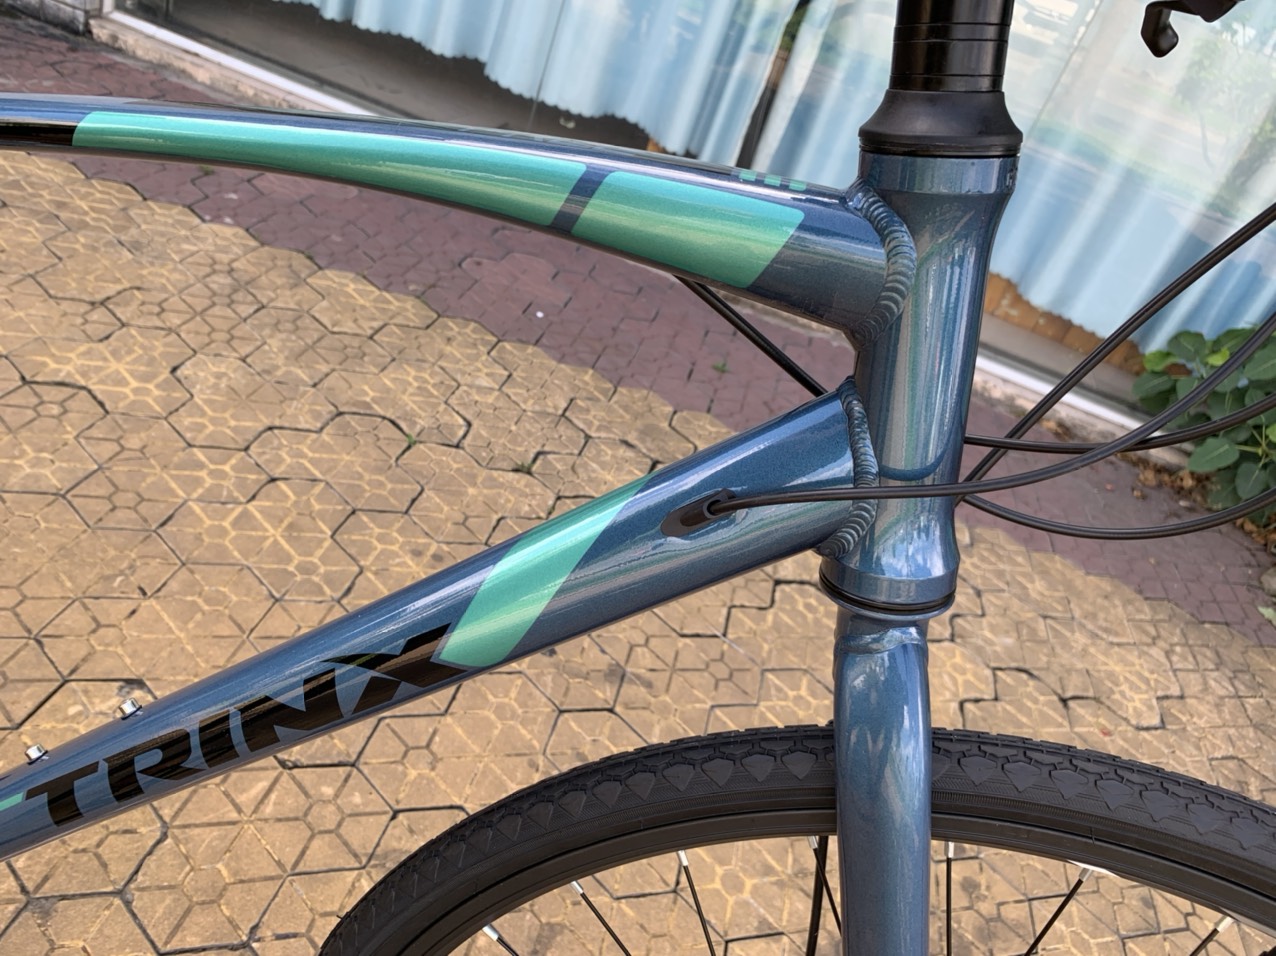 Xe đạp thể thao TRINX FREE 2.0 2020 Blue Black